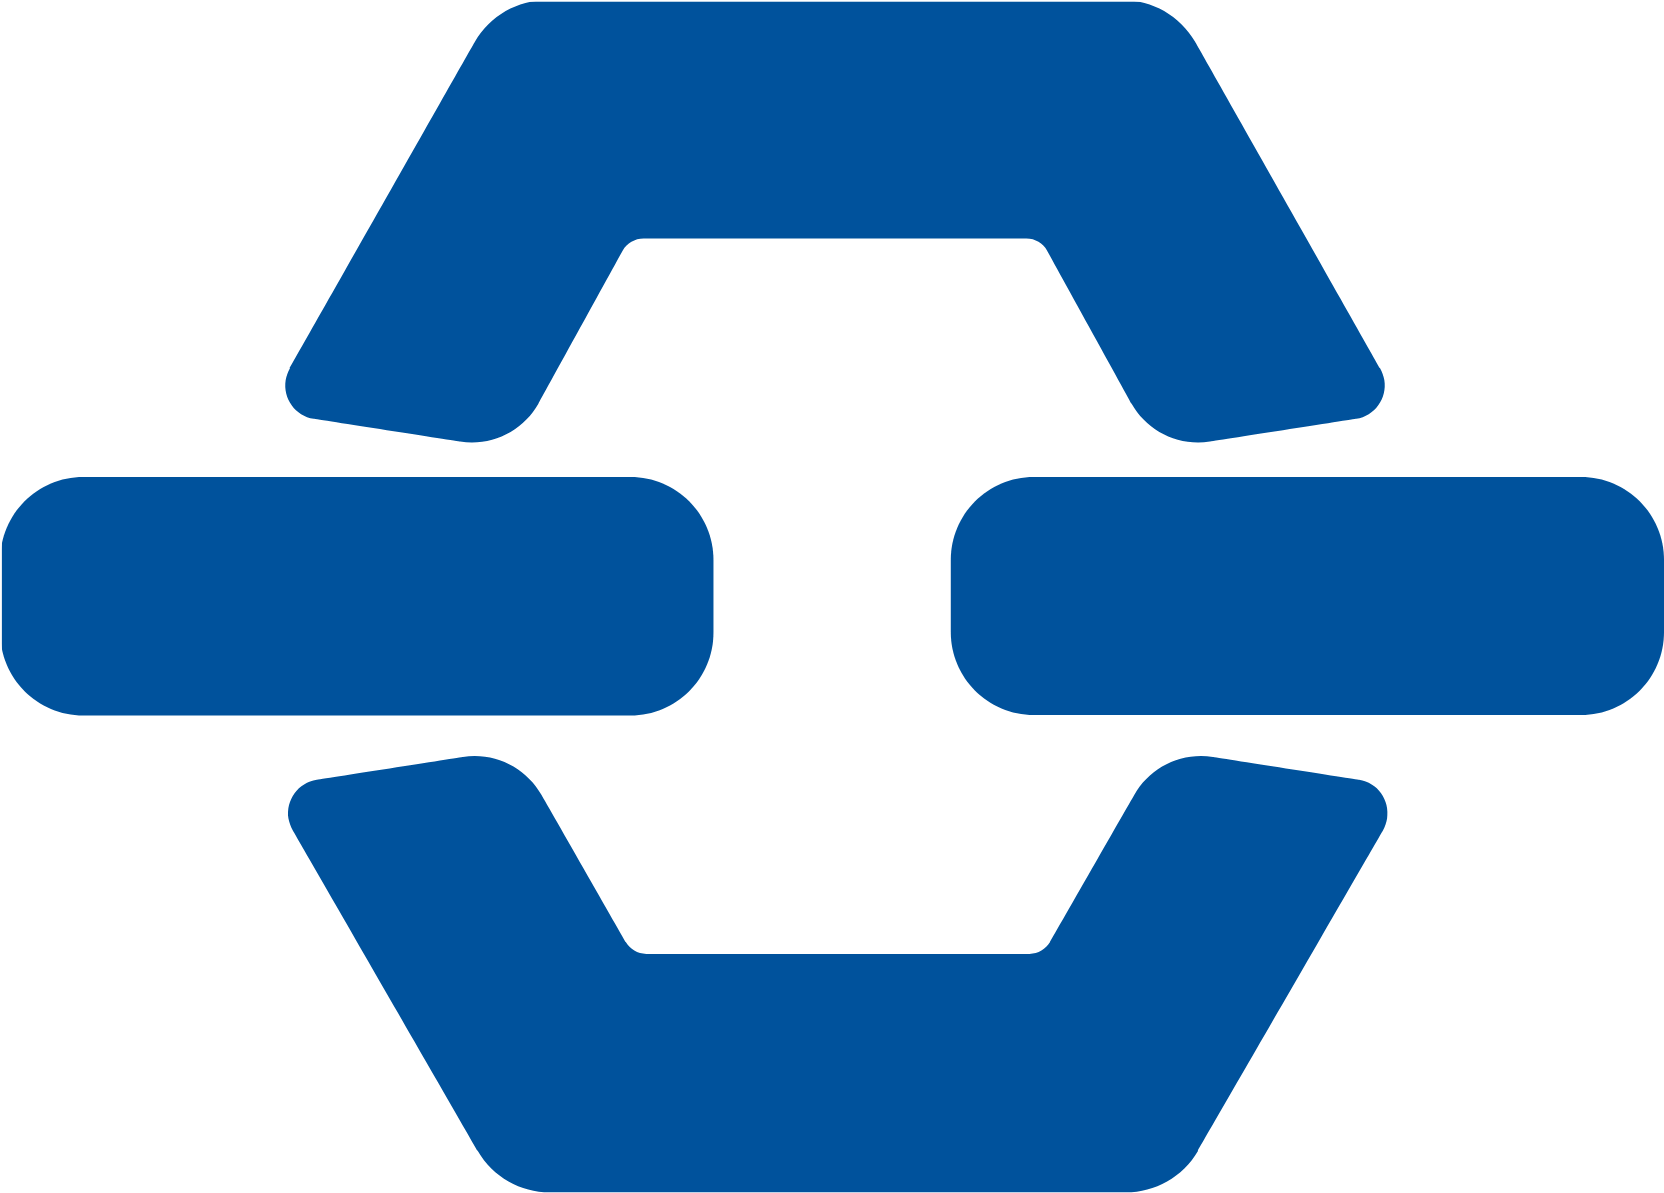 CSN Mineração logo (PNG transparent)